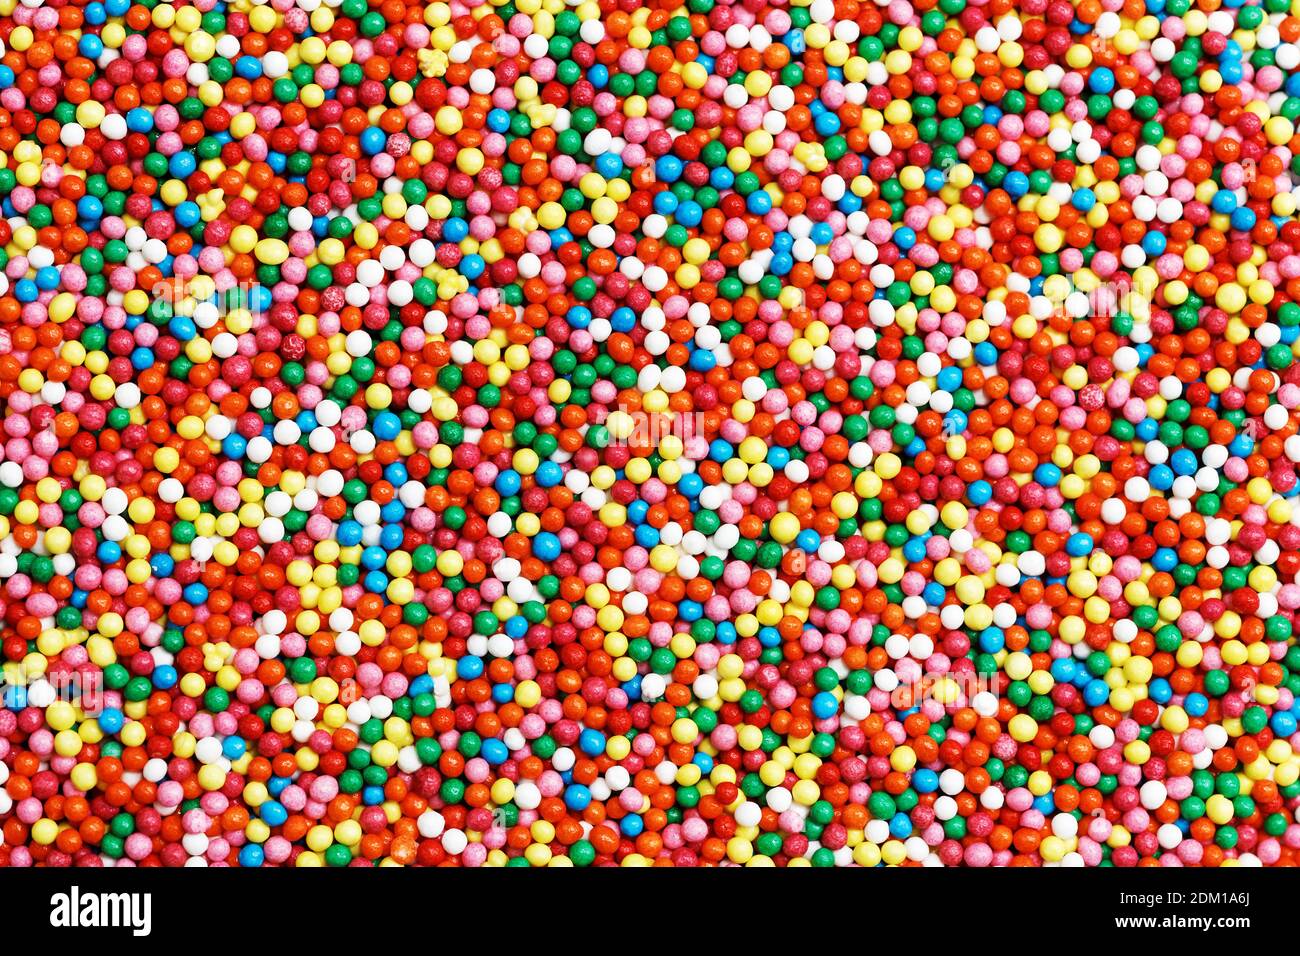 Hintergrund von bunten runden förmigen Süßigkeiten mit Schokolade gefüllt, bunten Kugeln. Stockfoto